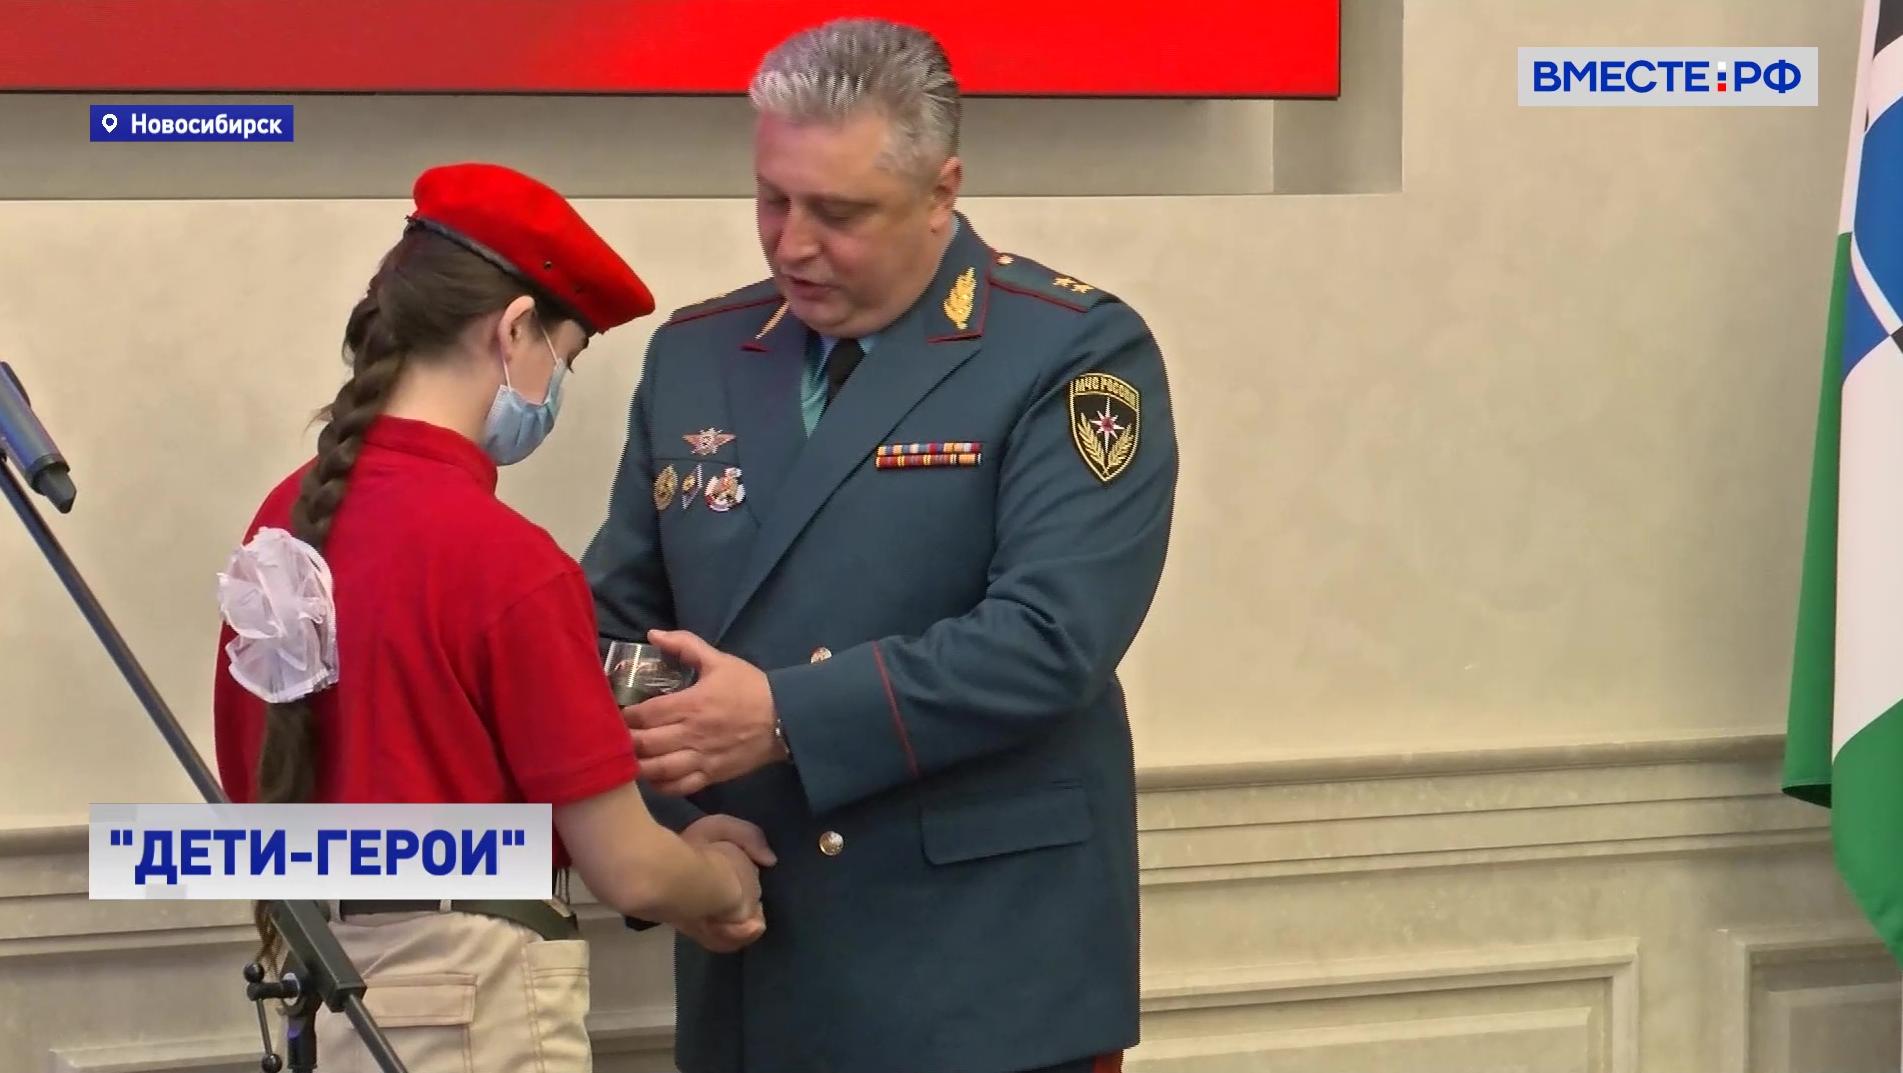 За проявленное мужество»: дети-герои из Новосибирской области награждены медалями